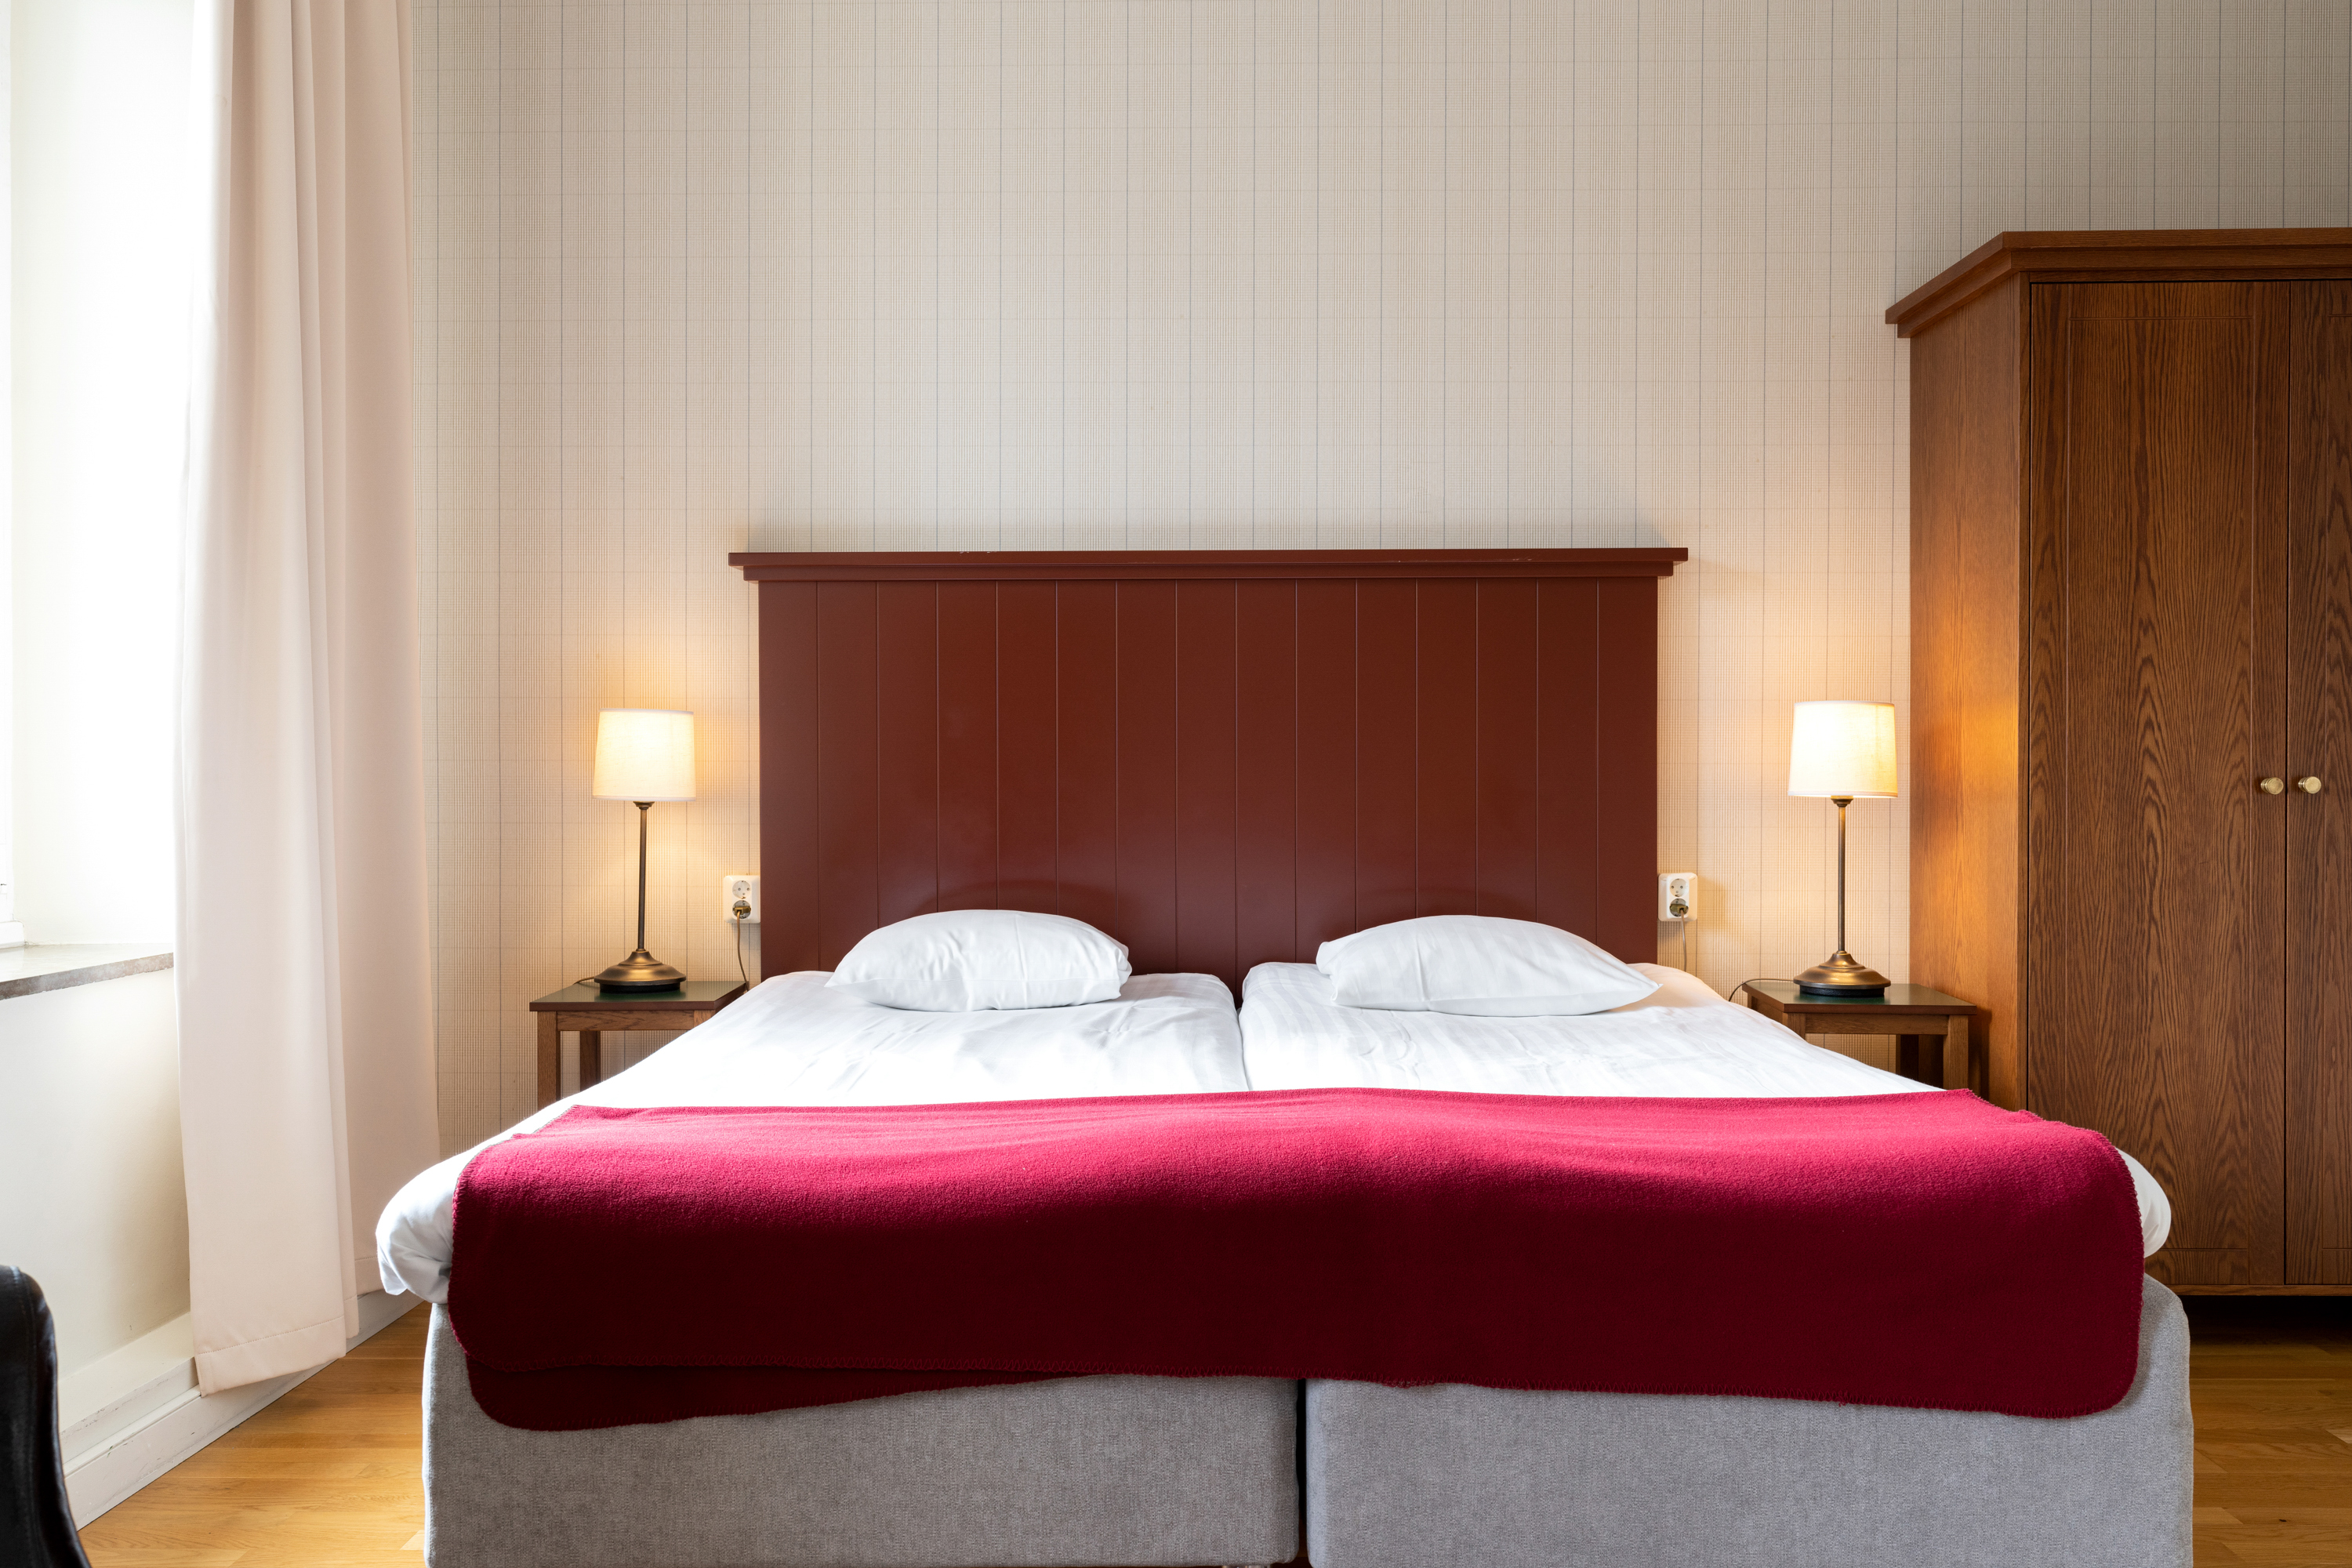 Mysigt hotellrum med säng, sänggavel i trä och sänglampor